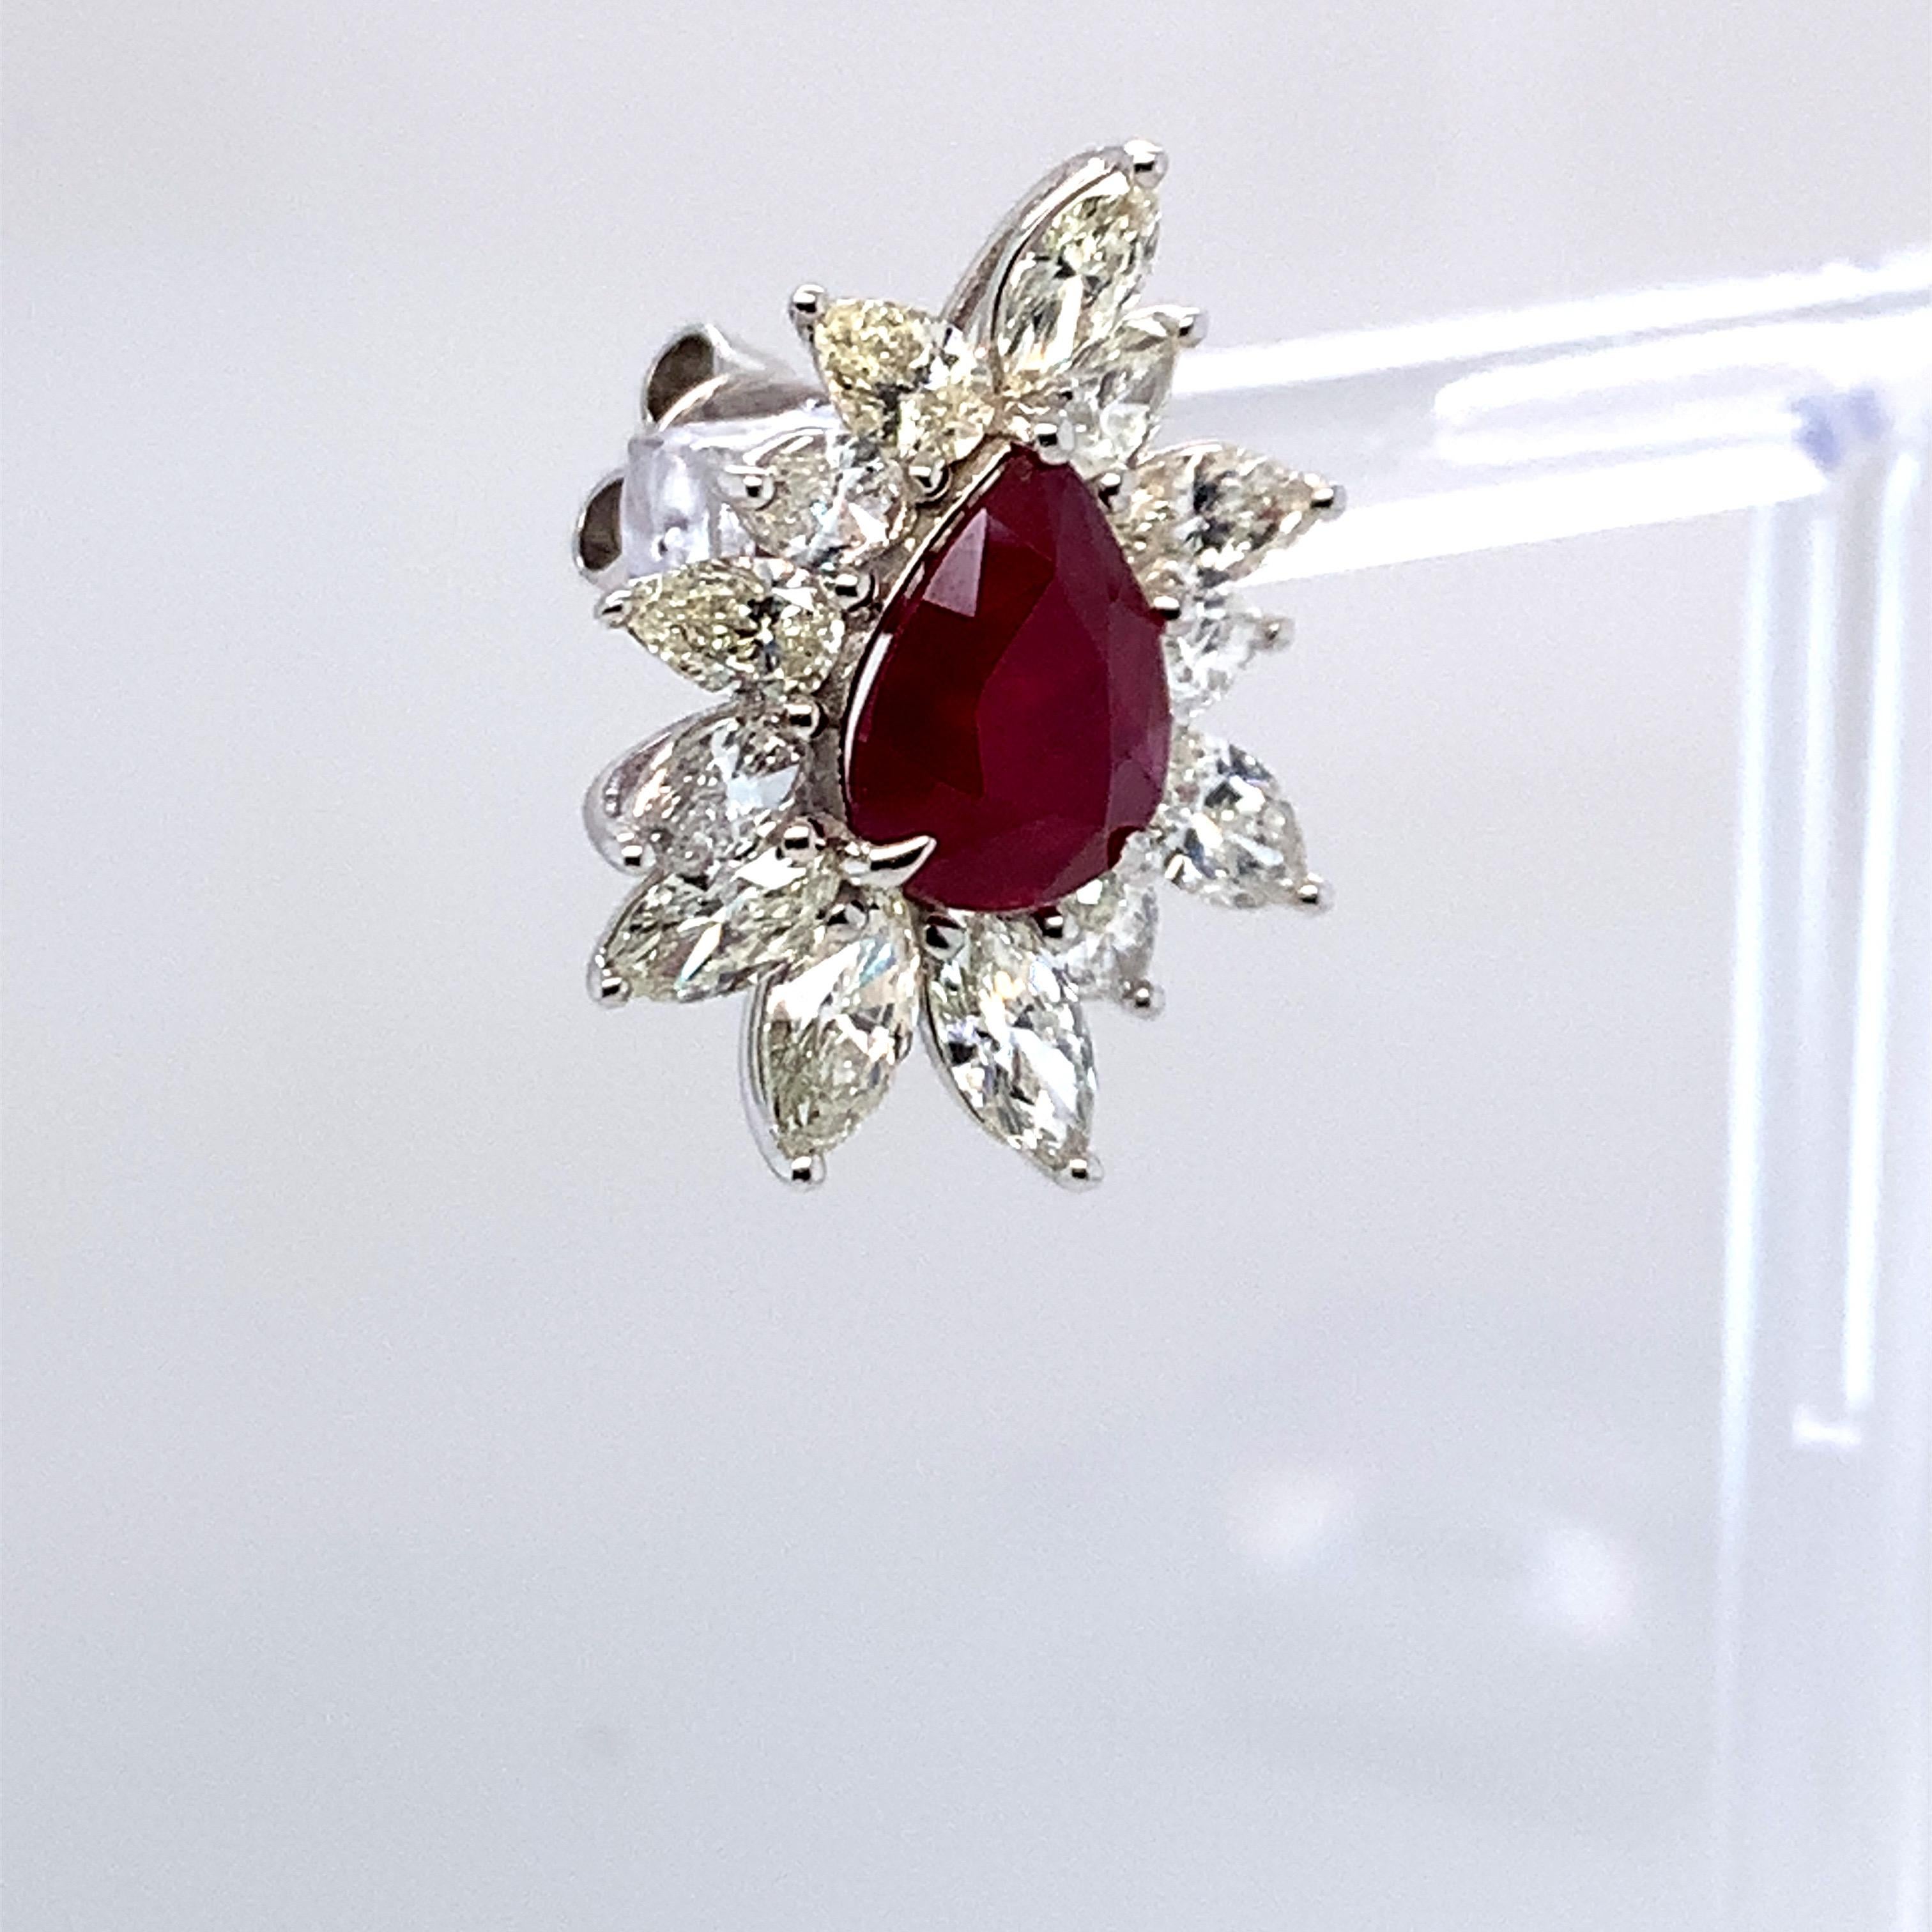 4.62 Carat Ruby Diamond Stud Earrings in 14K White Gold 1